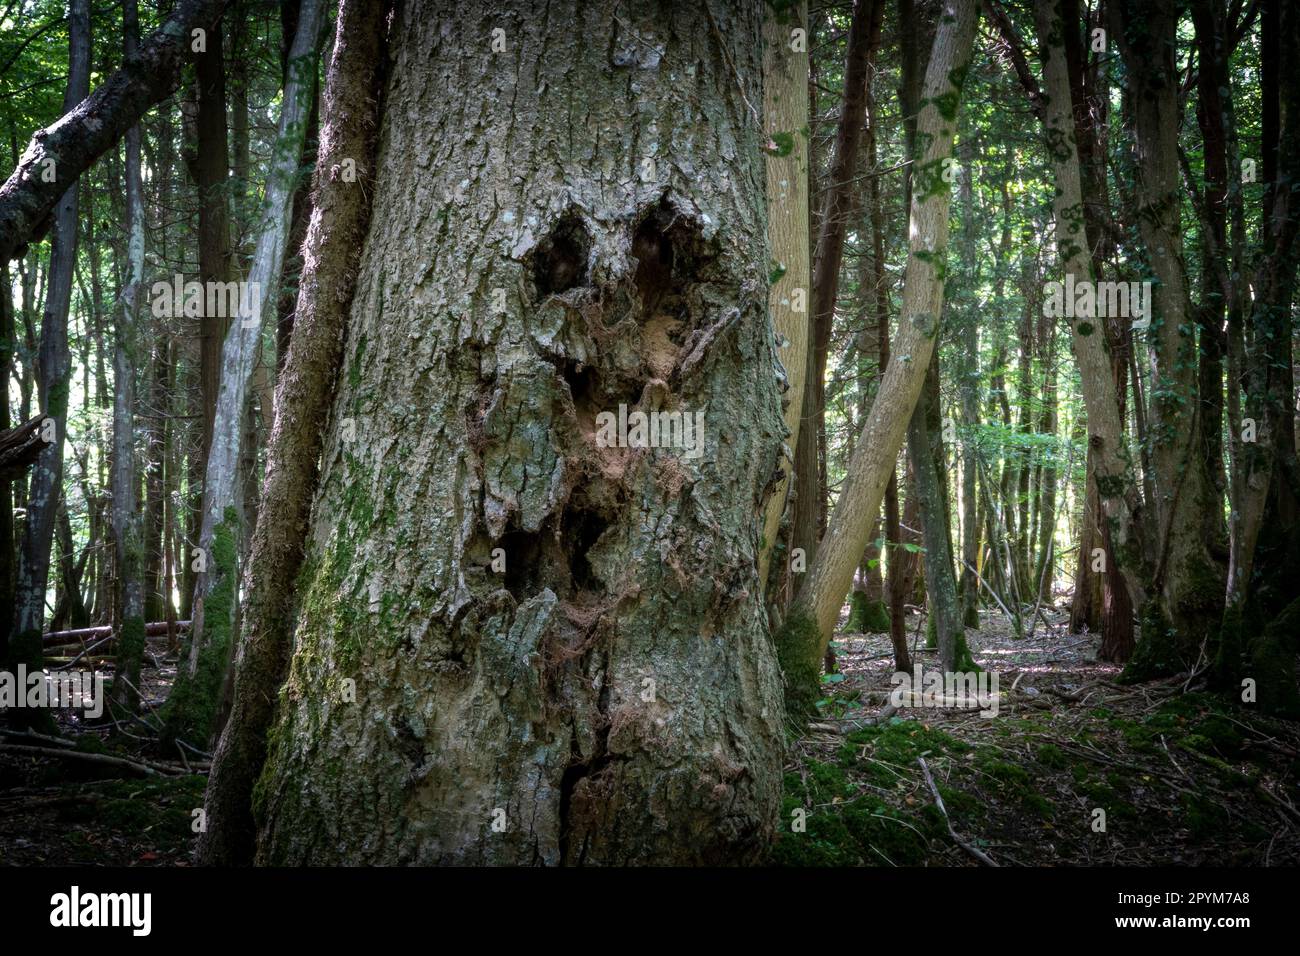 Gruselig aussehender Baum in einem dunklen Wald mit dem Aussehen eines menschlichen Gesichts in der Rinde Stockfoto